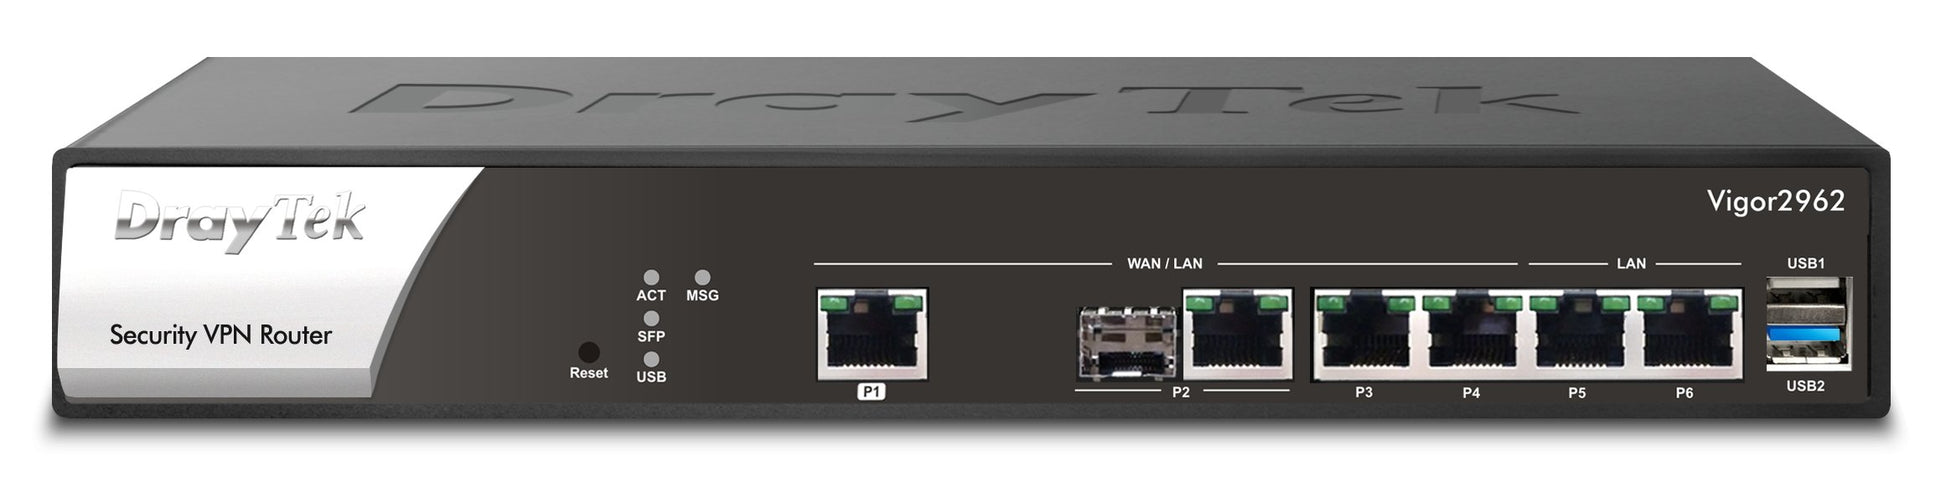 DrayTek Vigor 2962 Dual-WAN Load Balancing Firewall VPN router Front View